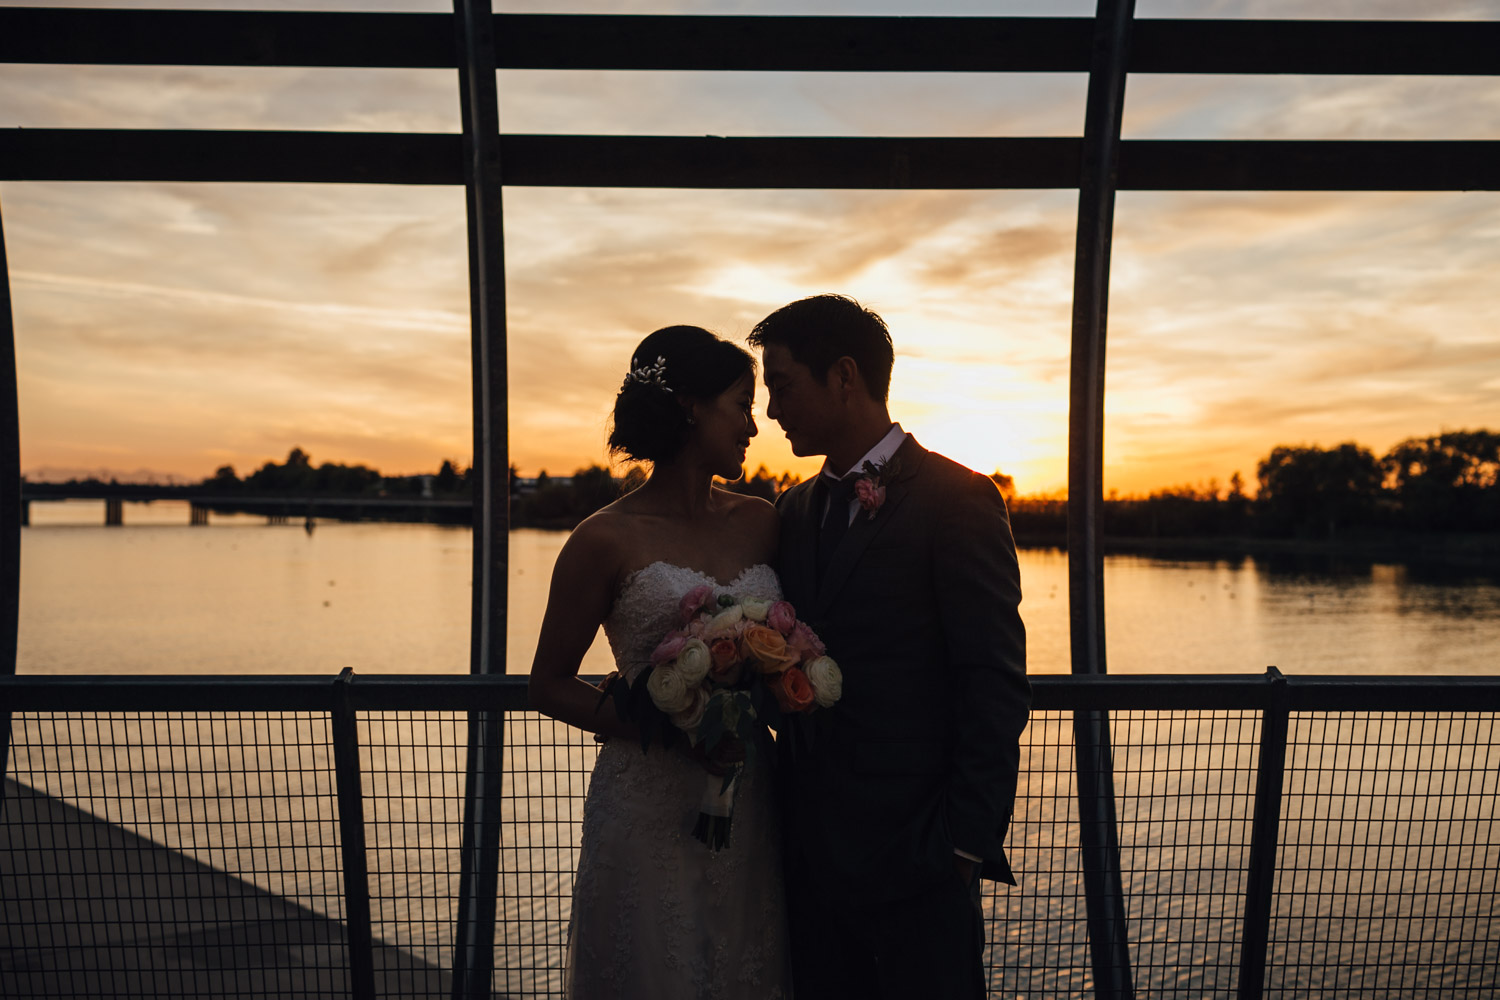 ubc boathouse wedding reception richmond bc photography sunset